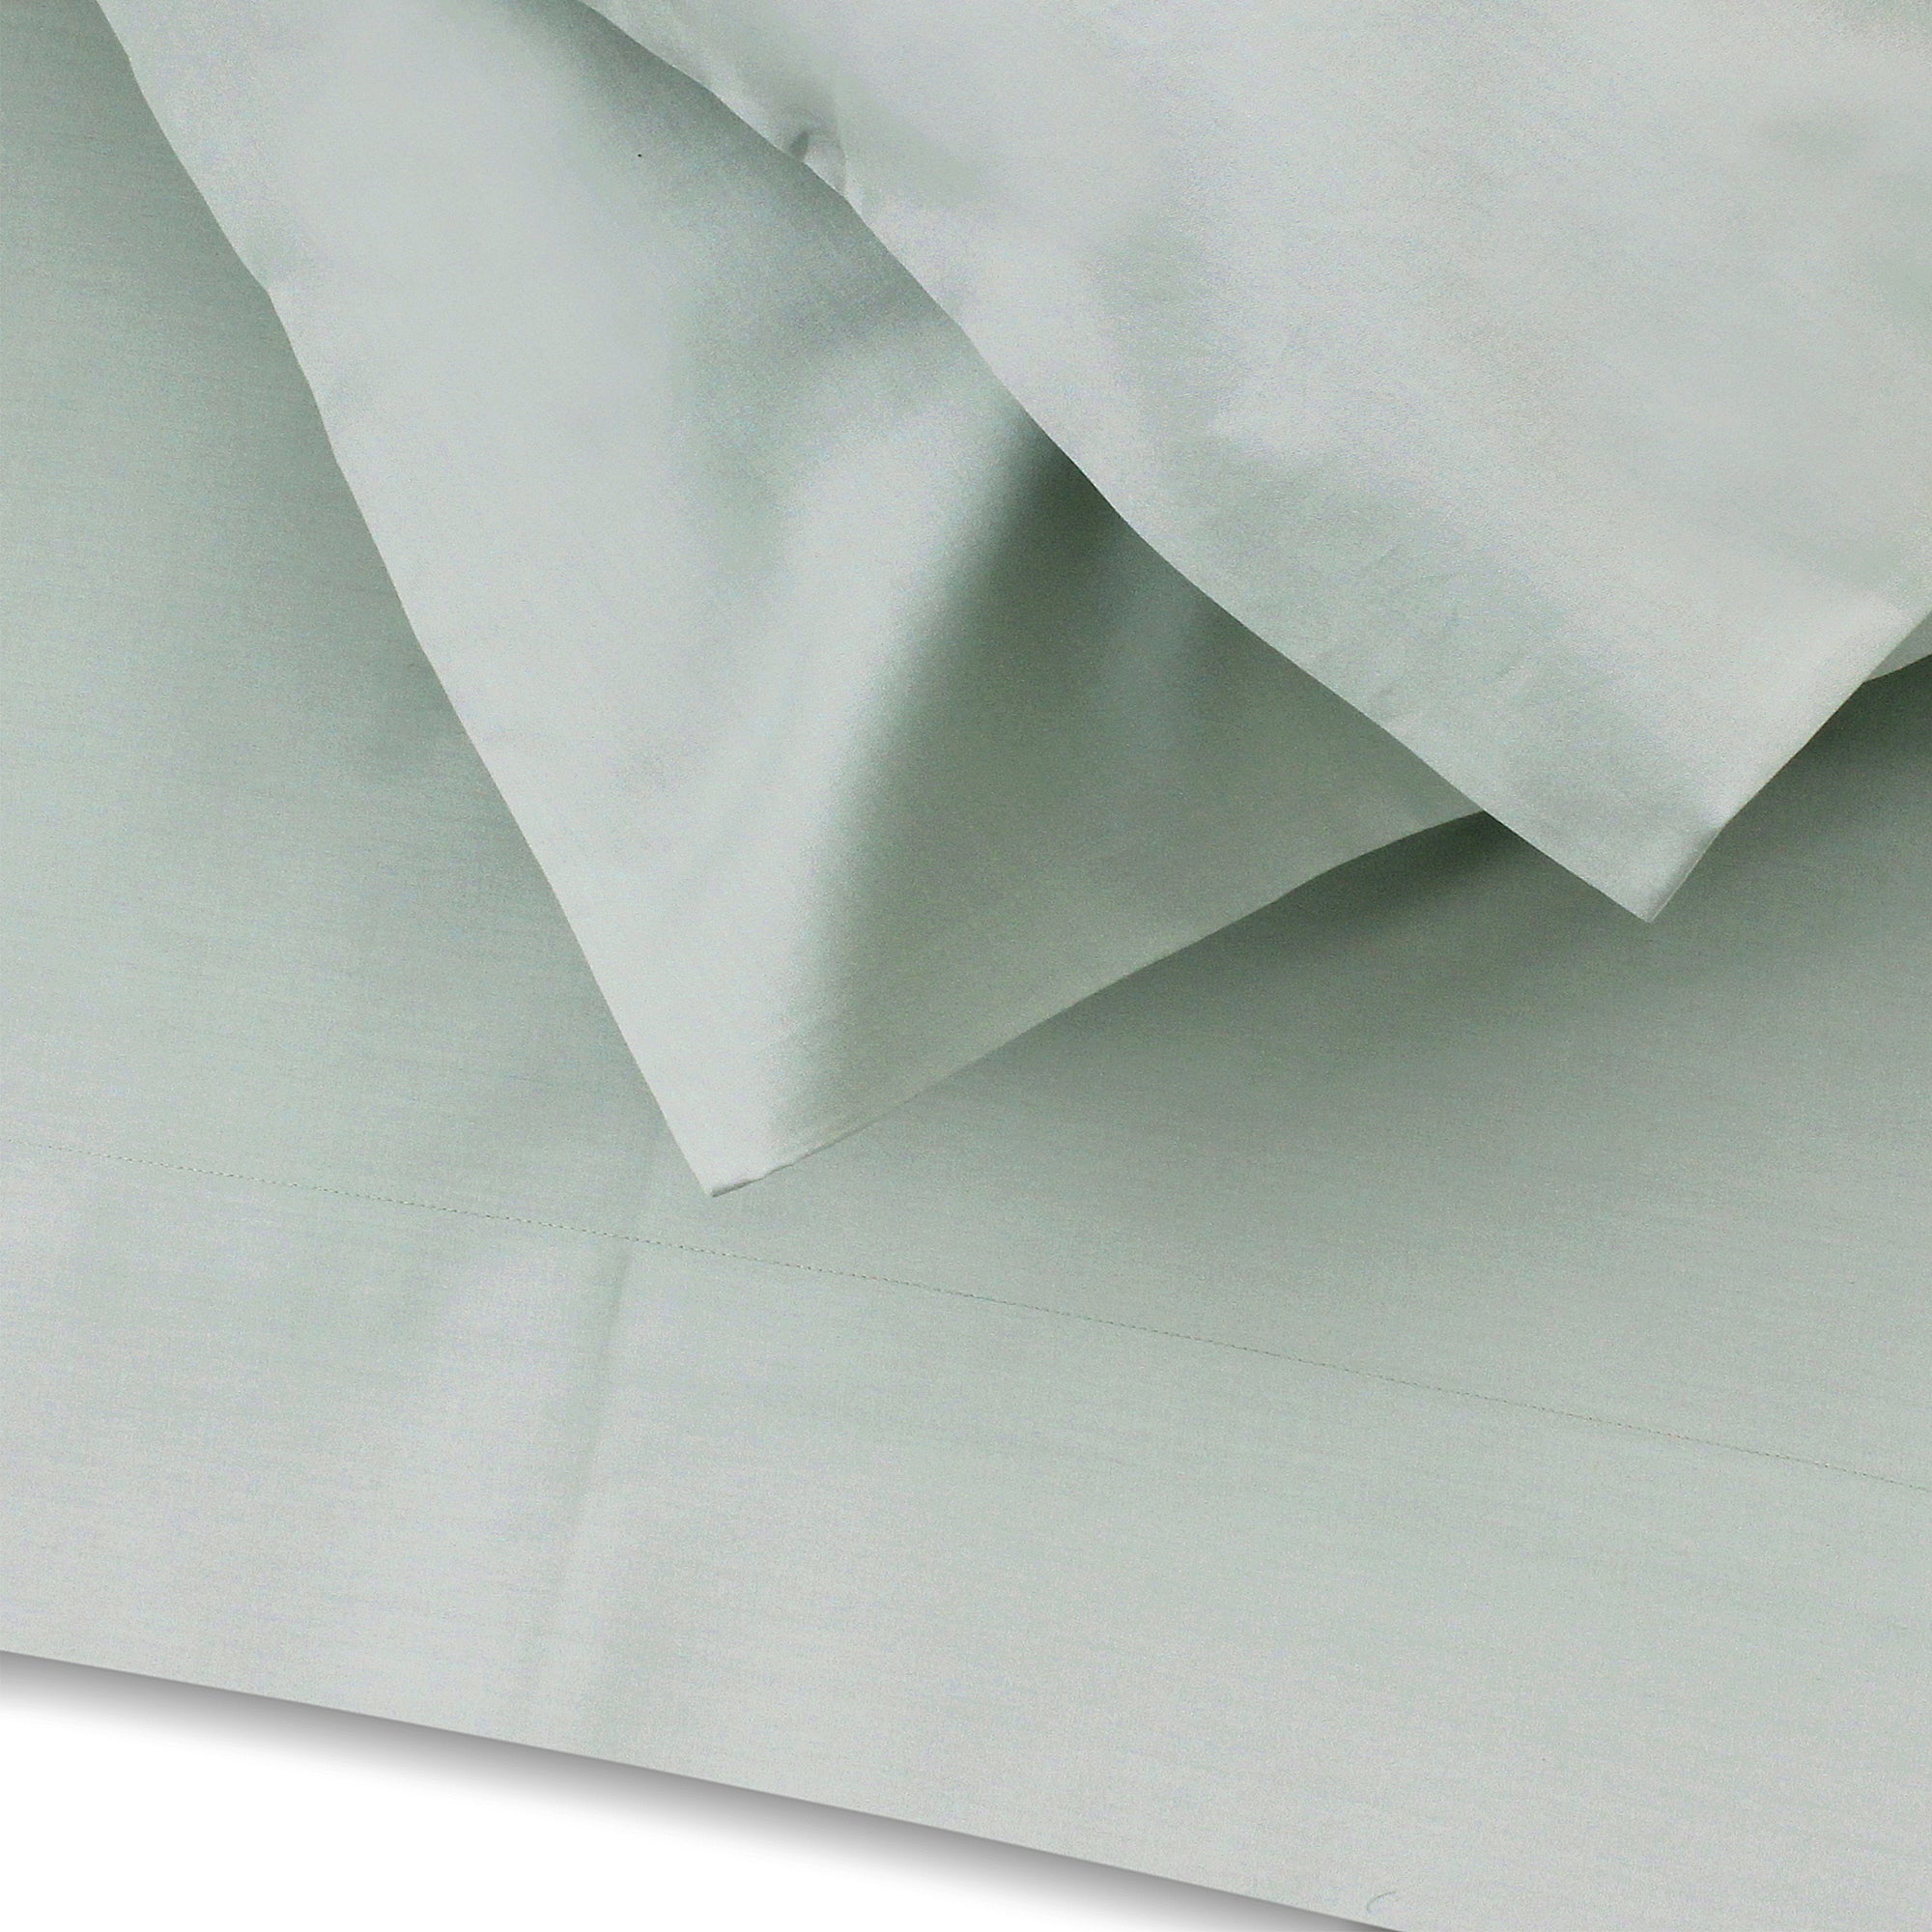 Jade Green Flat Sheet + Pillowcases (350 TC)